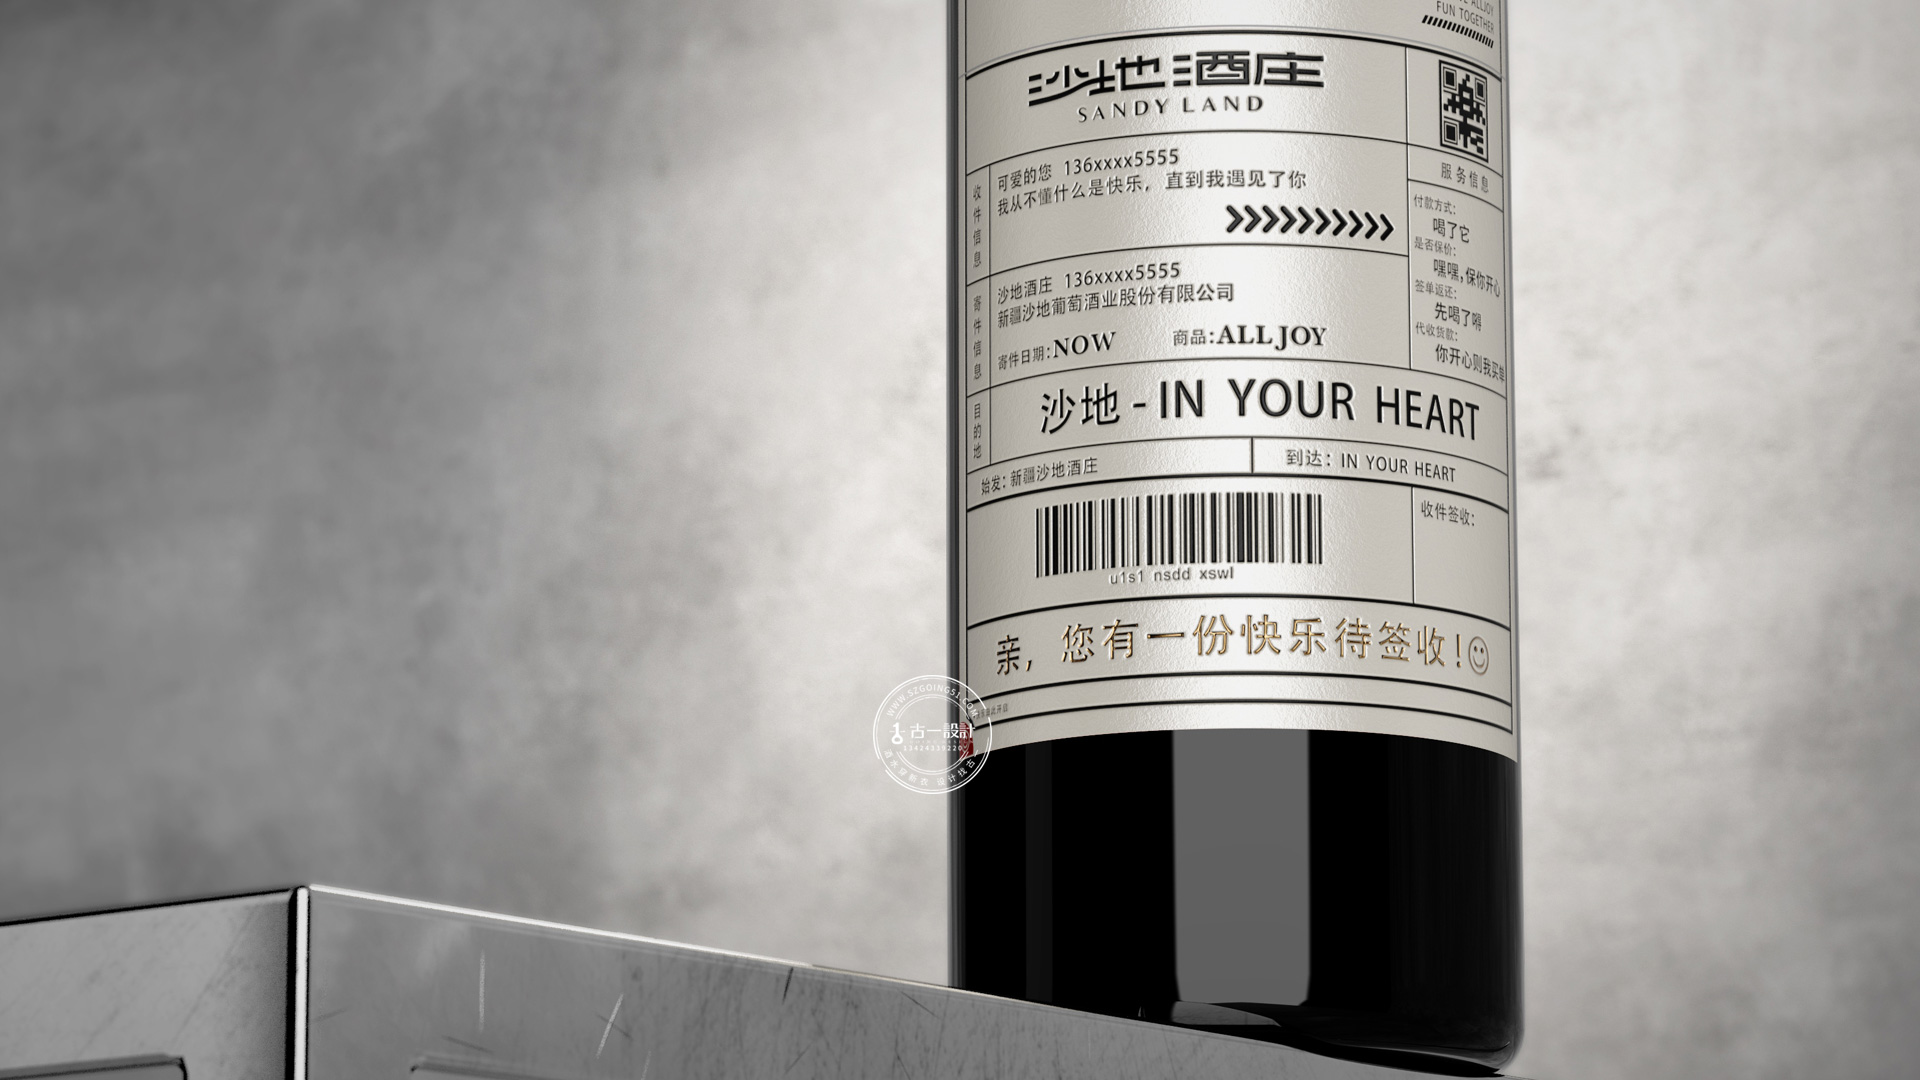 【沙地 x 古一设计】乐享“撕标”系列创意互动红酒标签包装设